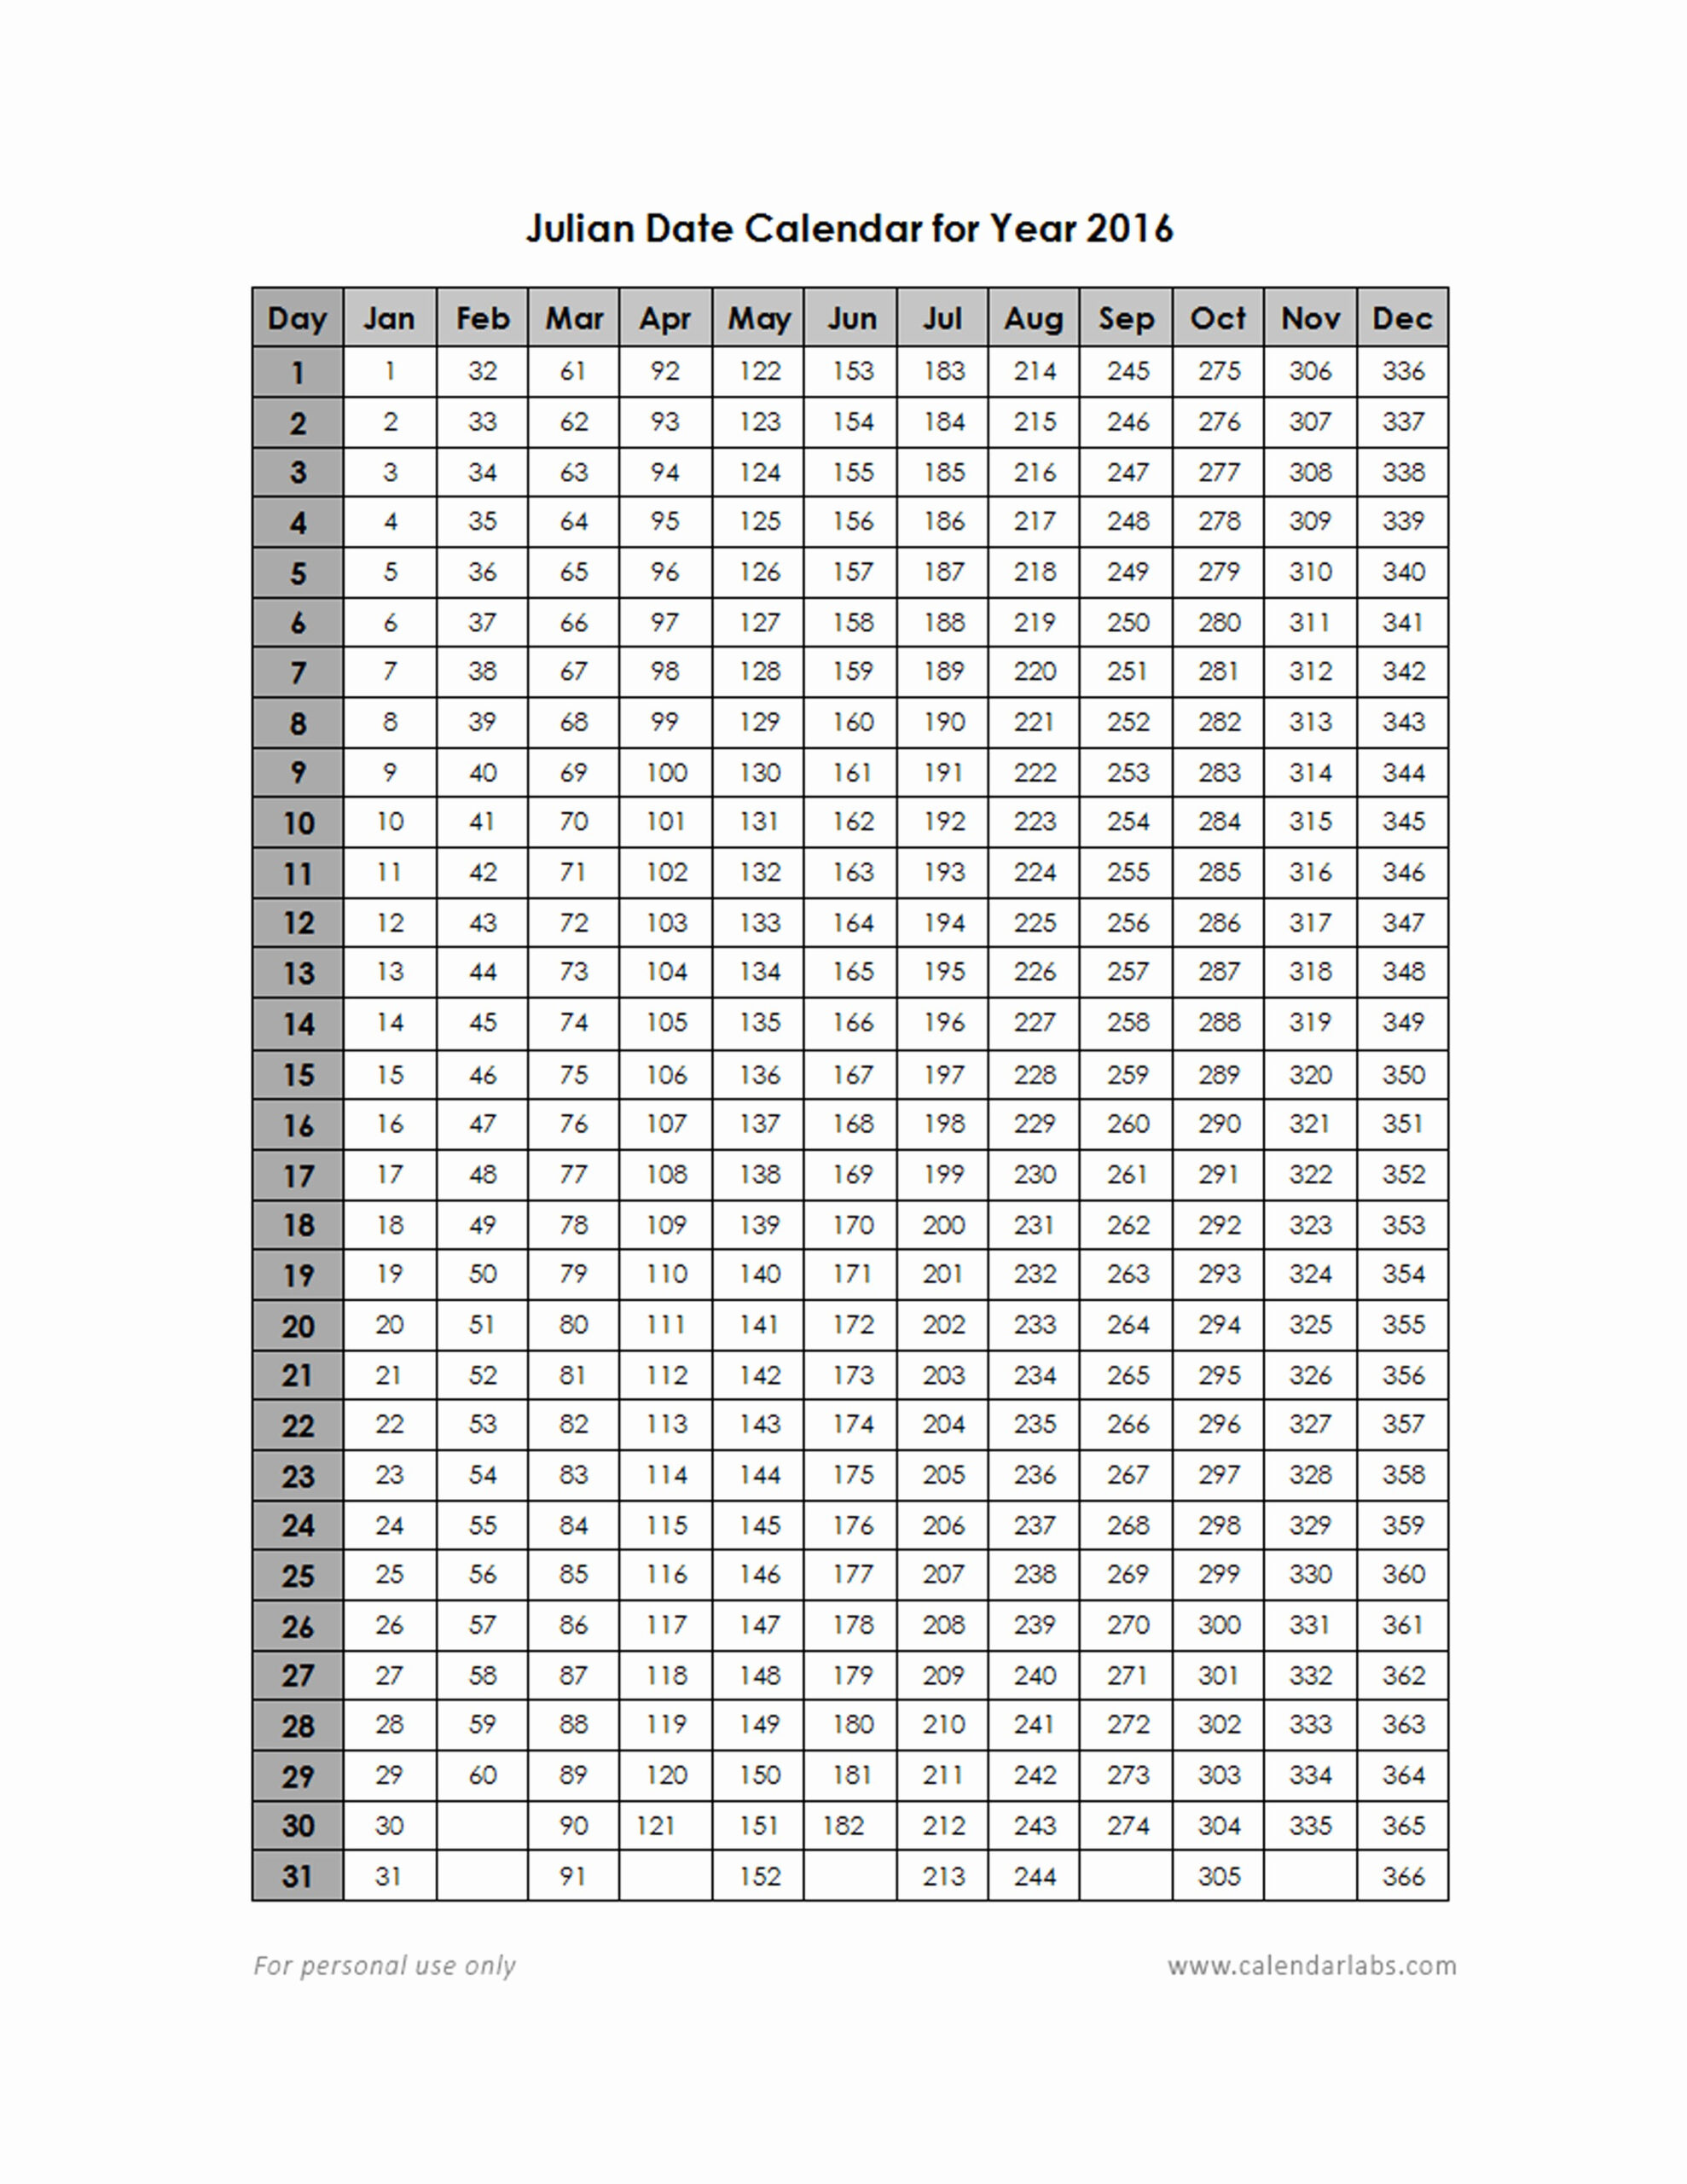 Quadax Julian Calendar | Calendar For Planning pertaining to Quadax Julian Calendar 2018